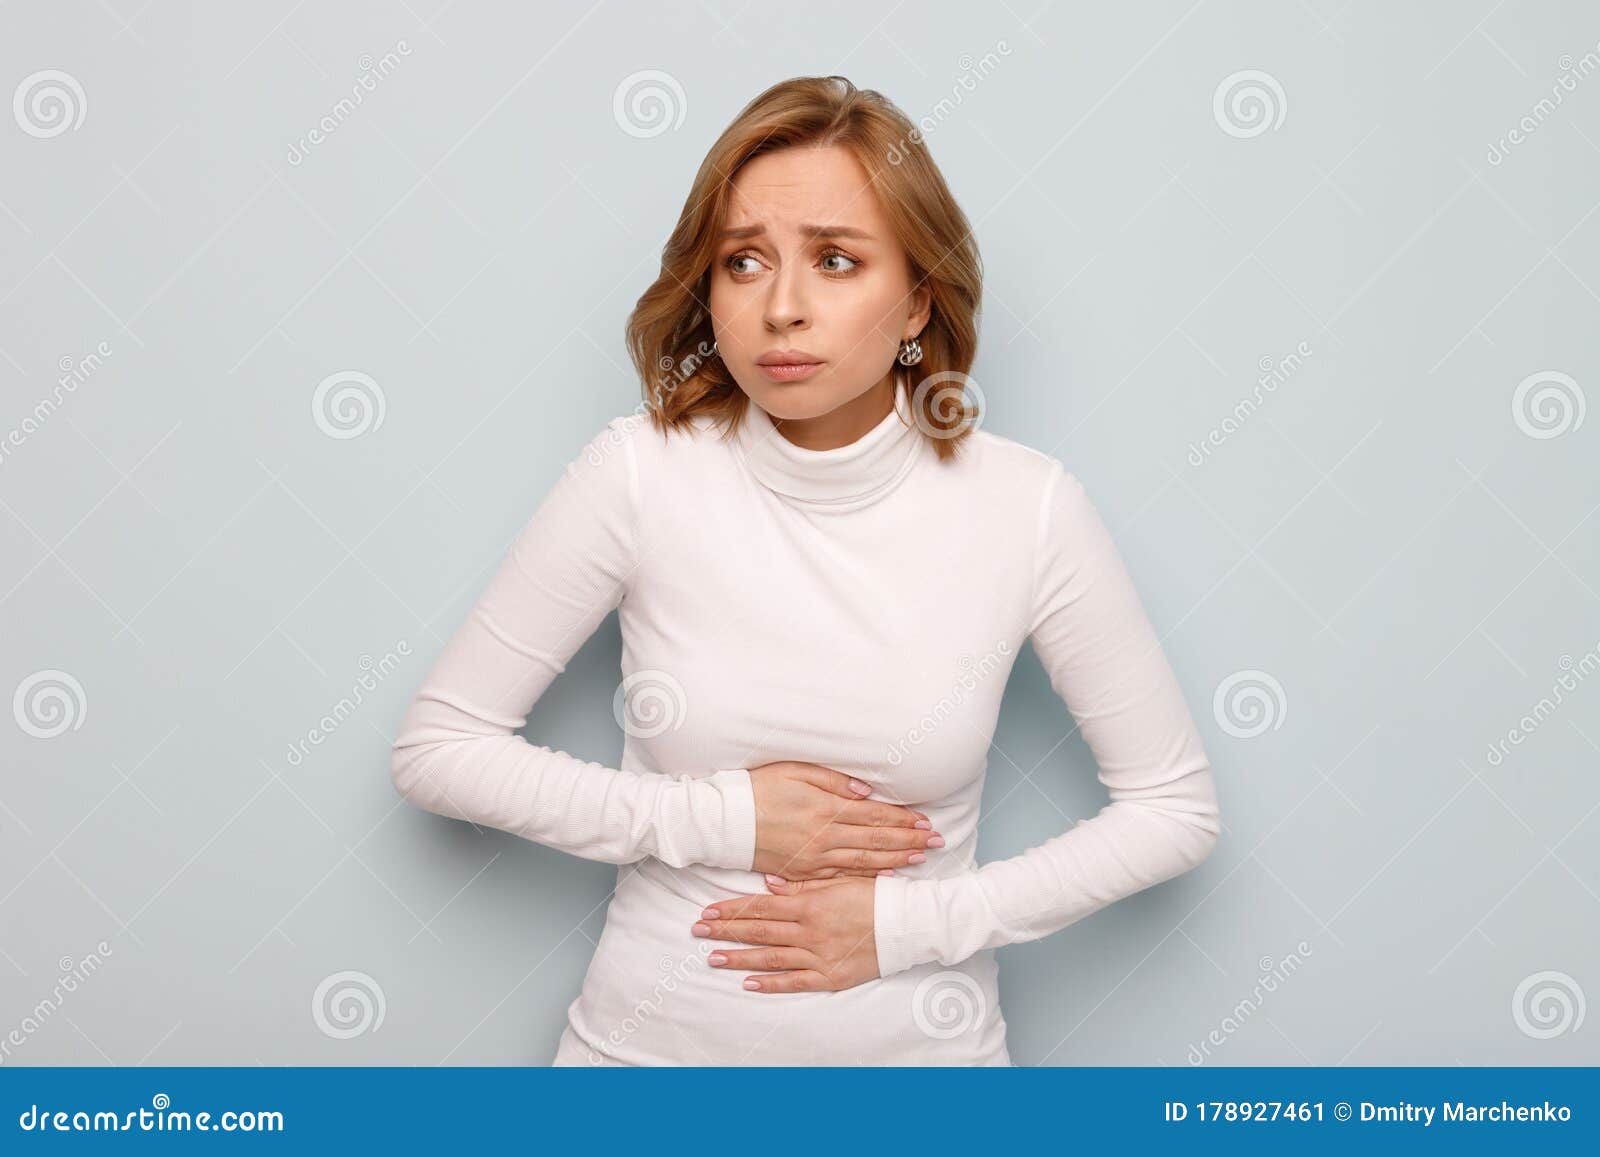 月经期 女性健康问题 腹痛 妇科腹痛 腹痛或腹痛库存图片 图片包括有病症 食道 白种人 腹泻